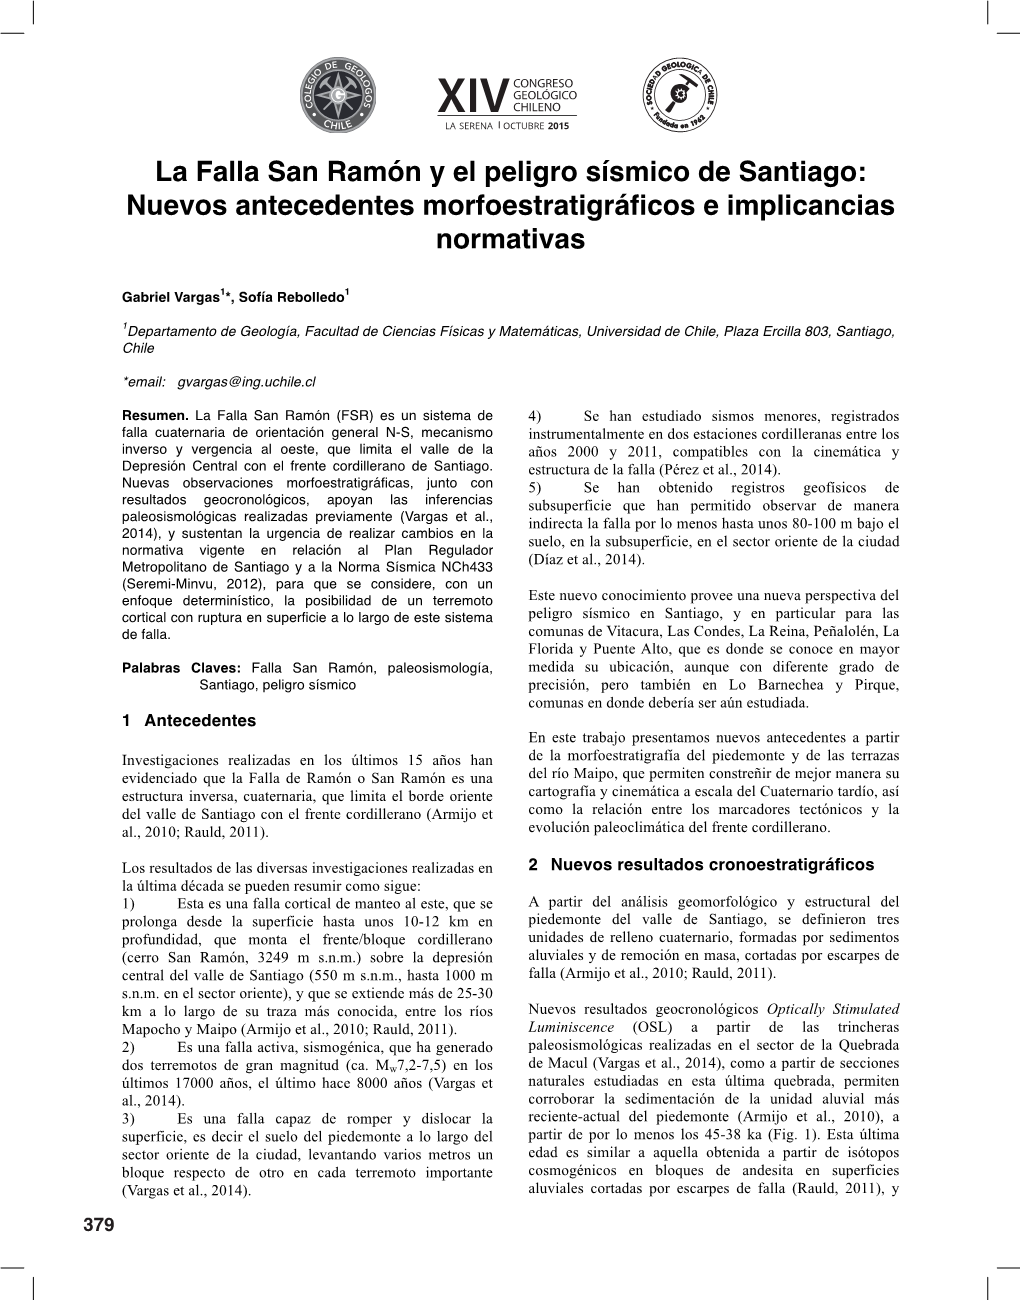 La Falla San Ramón Y El Peligro Sísmico De Santiago: Nuevos Antecedentes Morfoestratigráficos E Implicancias Normativas